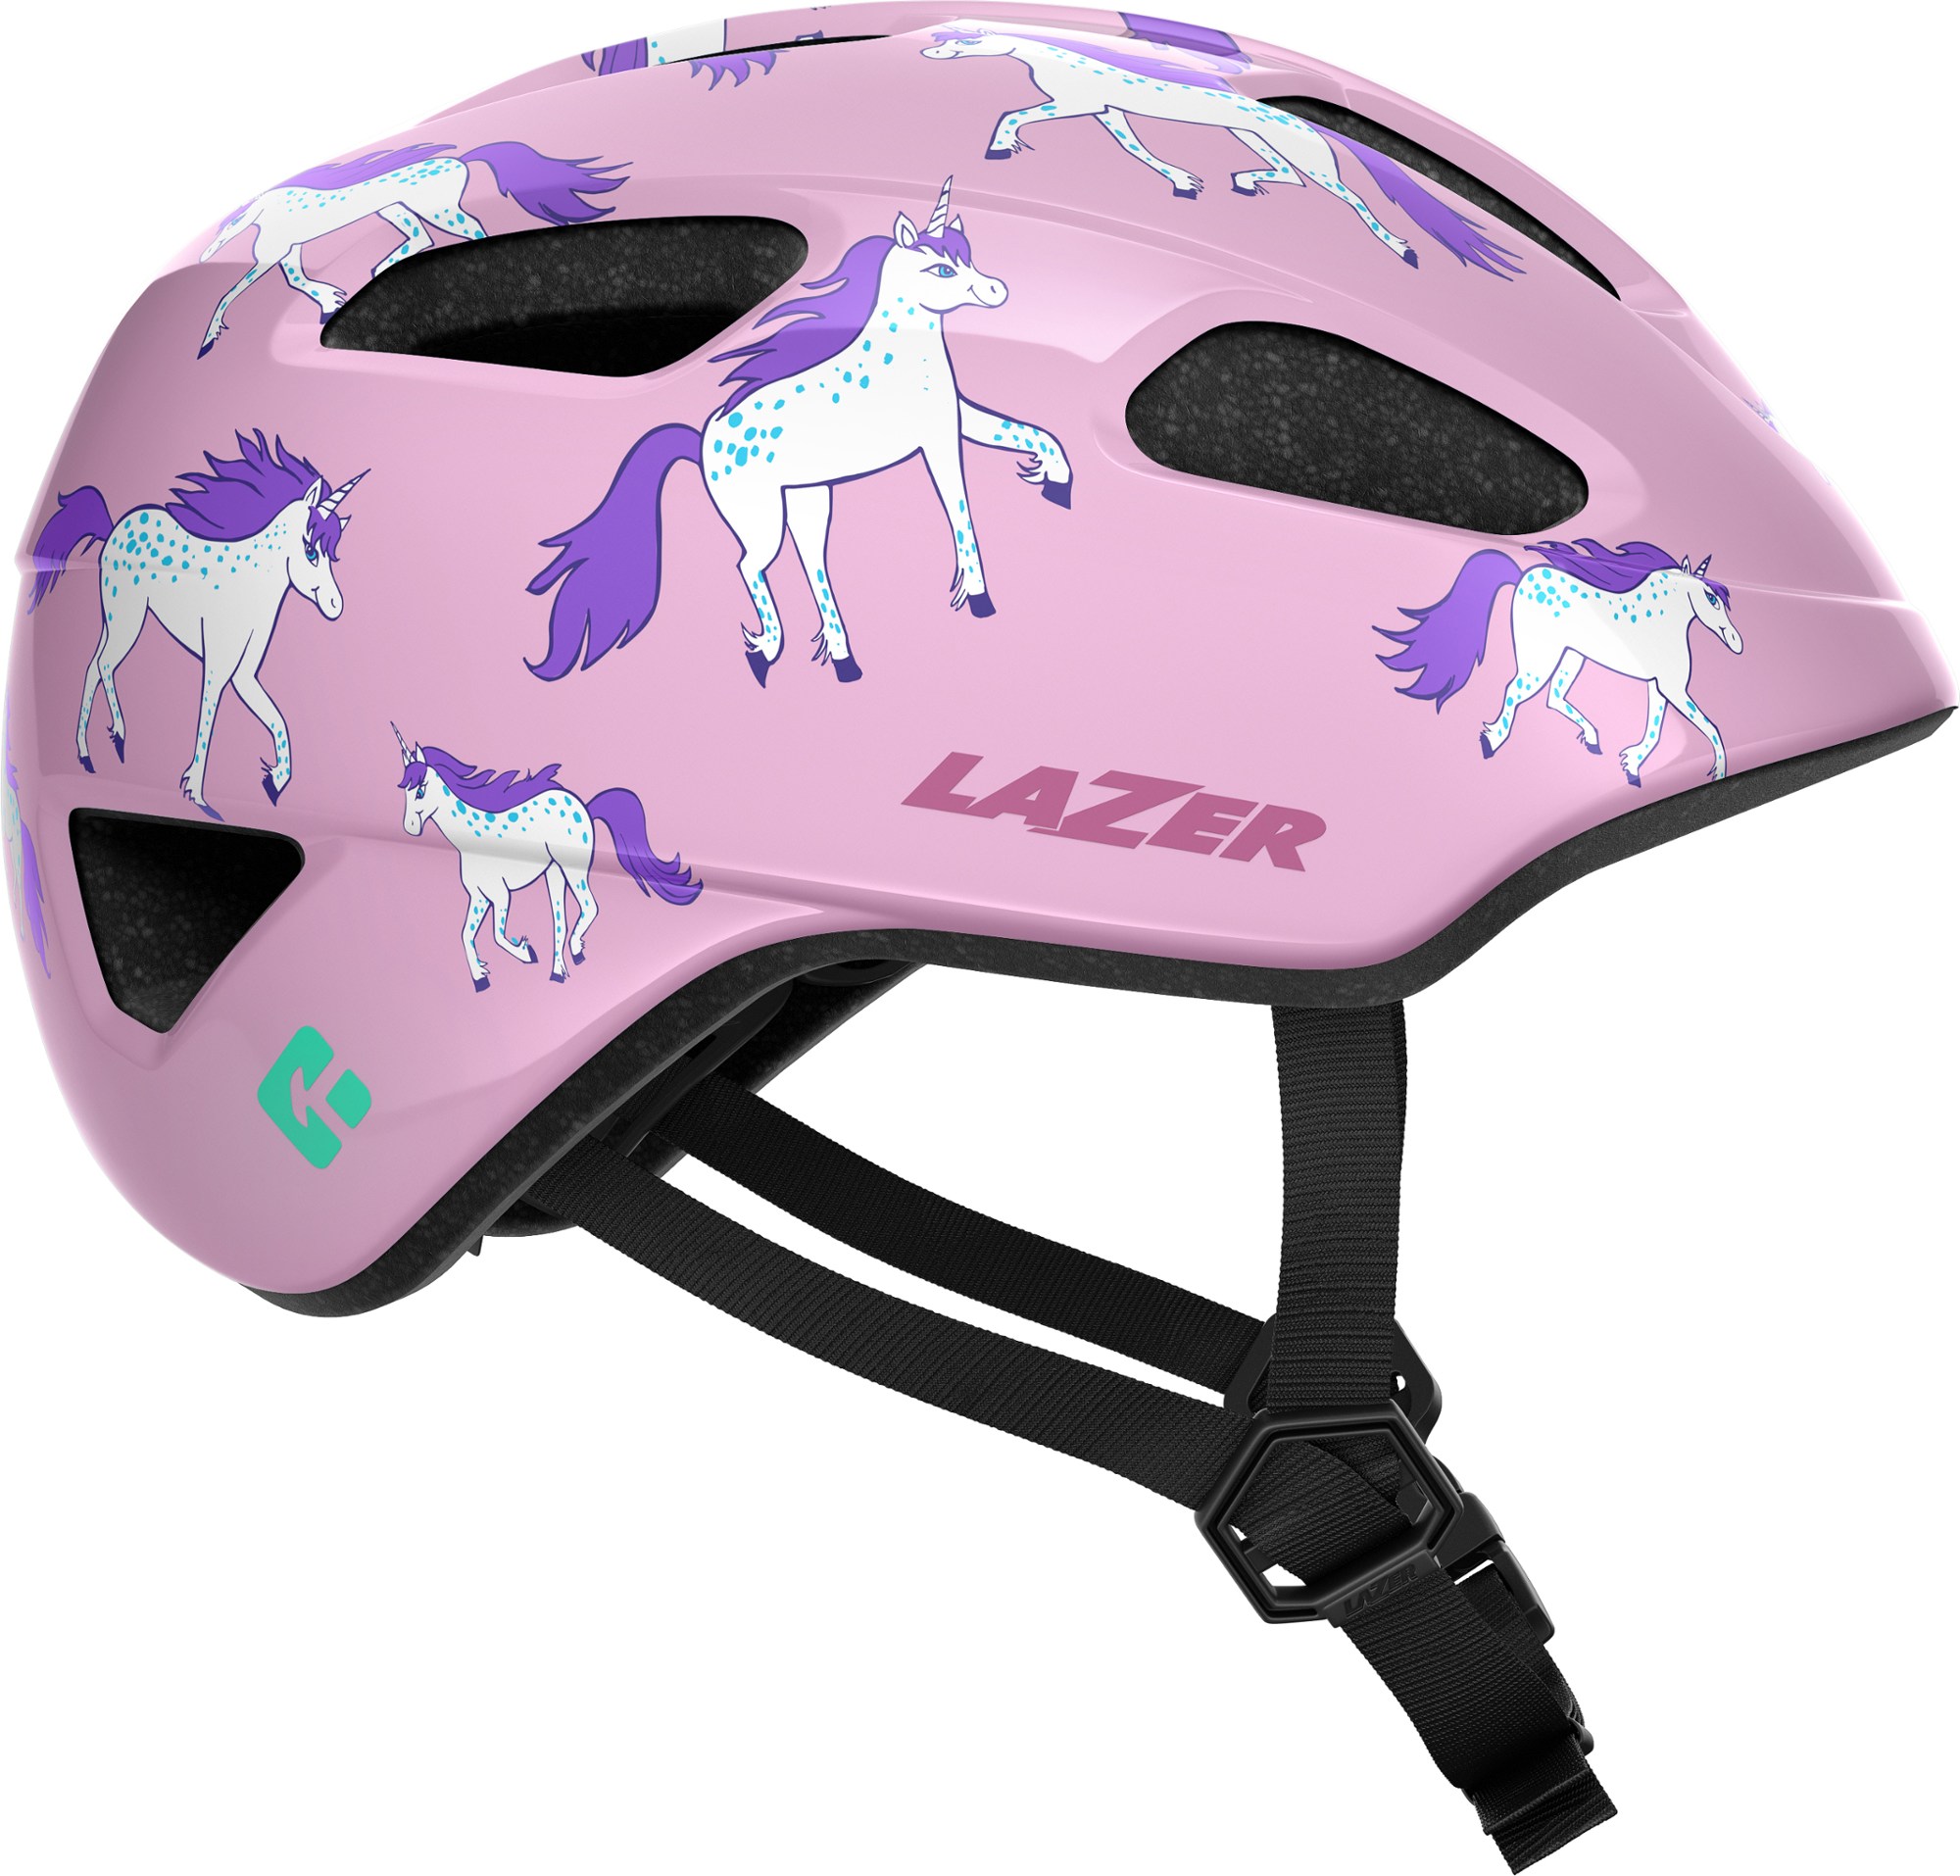 шлем велосипедный lazer coyote мат темно серый размер l blc2217888919 Велосипедный шлем Nutz KinetiCore — детский Lazer, розовый